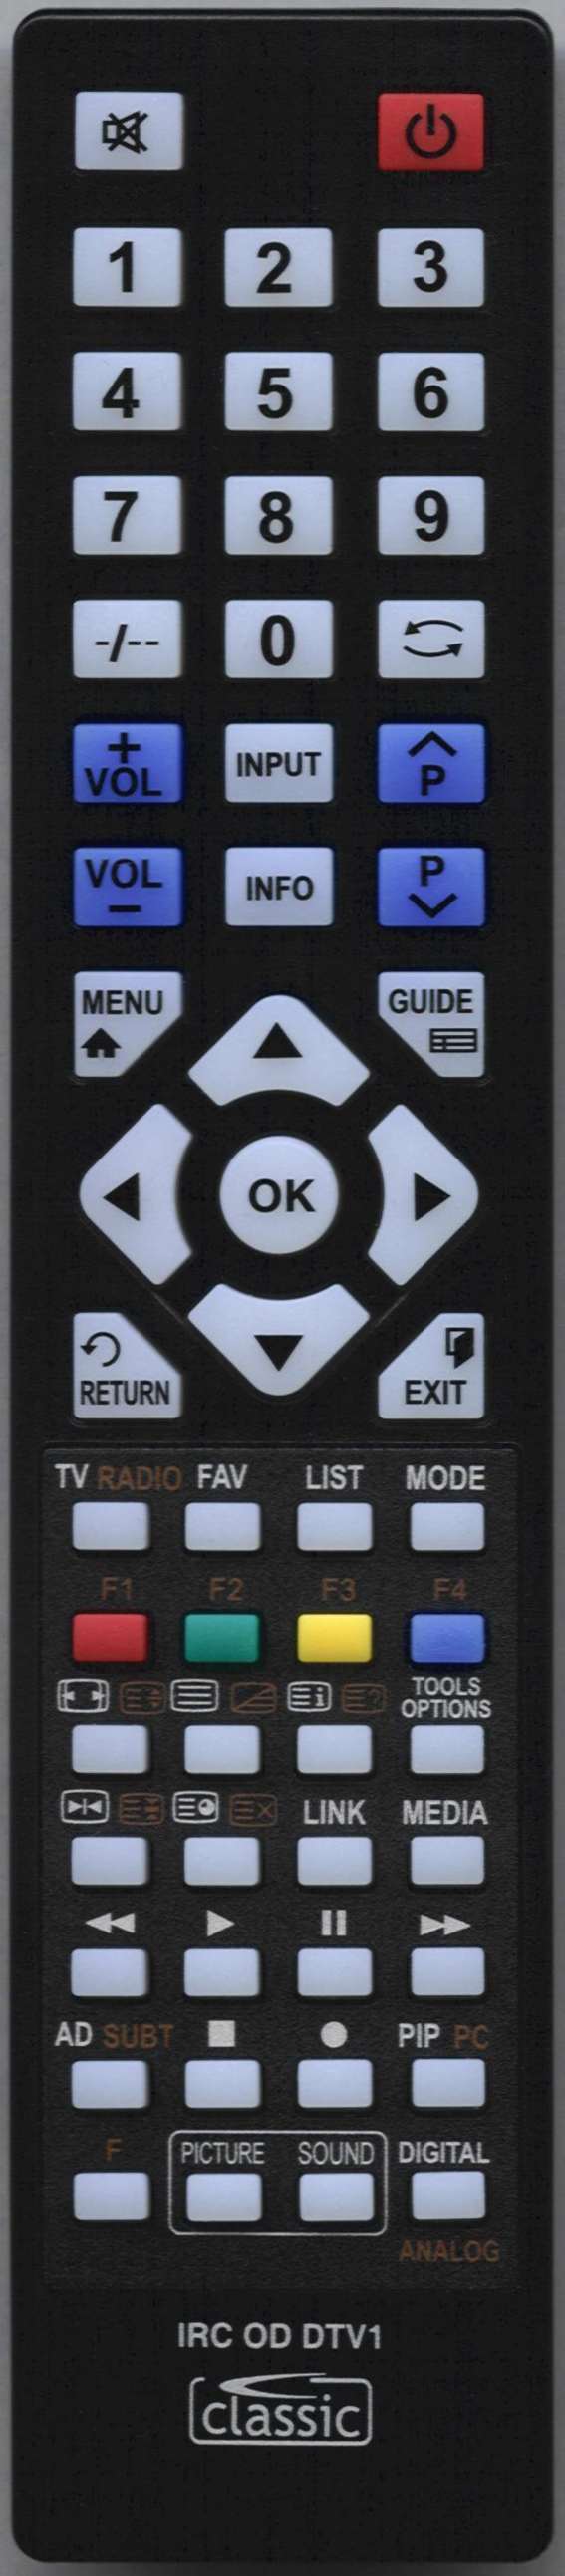 LG AKB74915324 Remote Control Alternative 